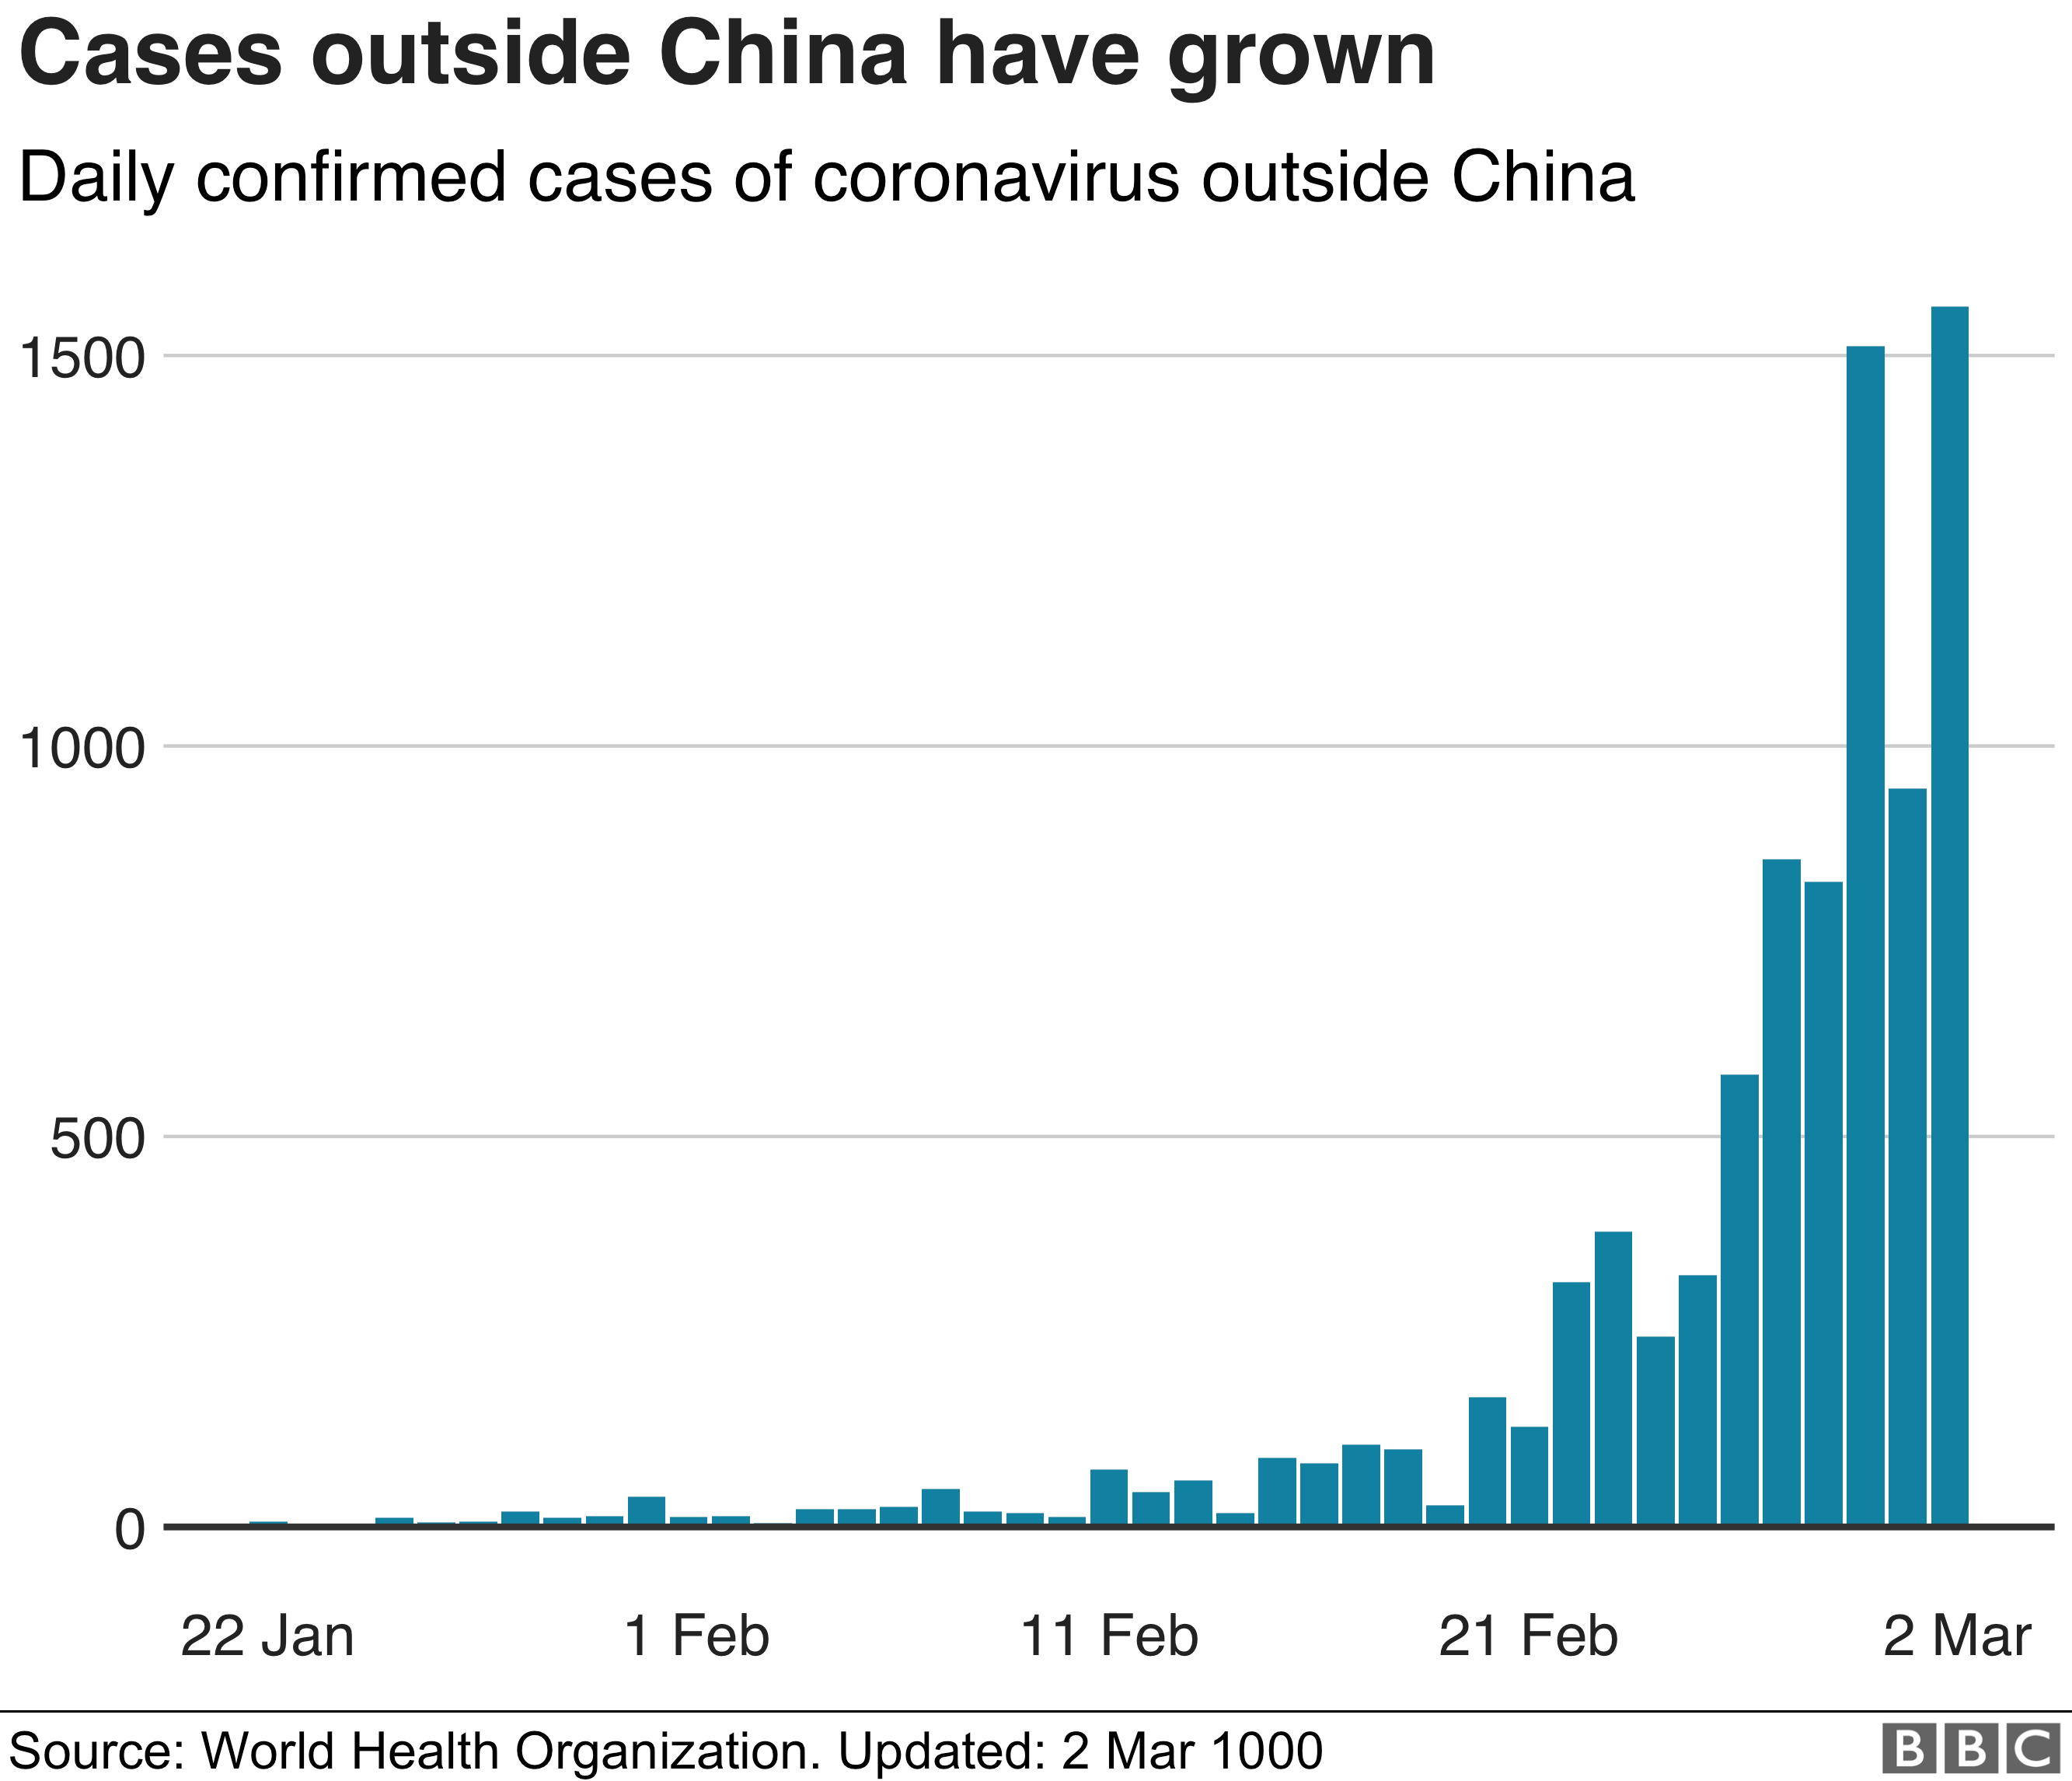 График, показывающий, что количество случаев ежедневно объявляемых за пределами Китая выросло в последнее время